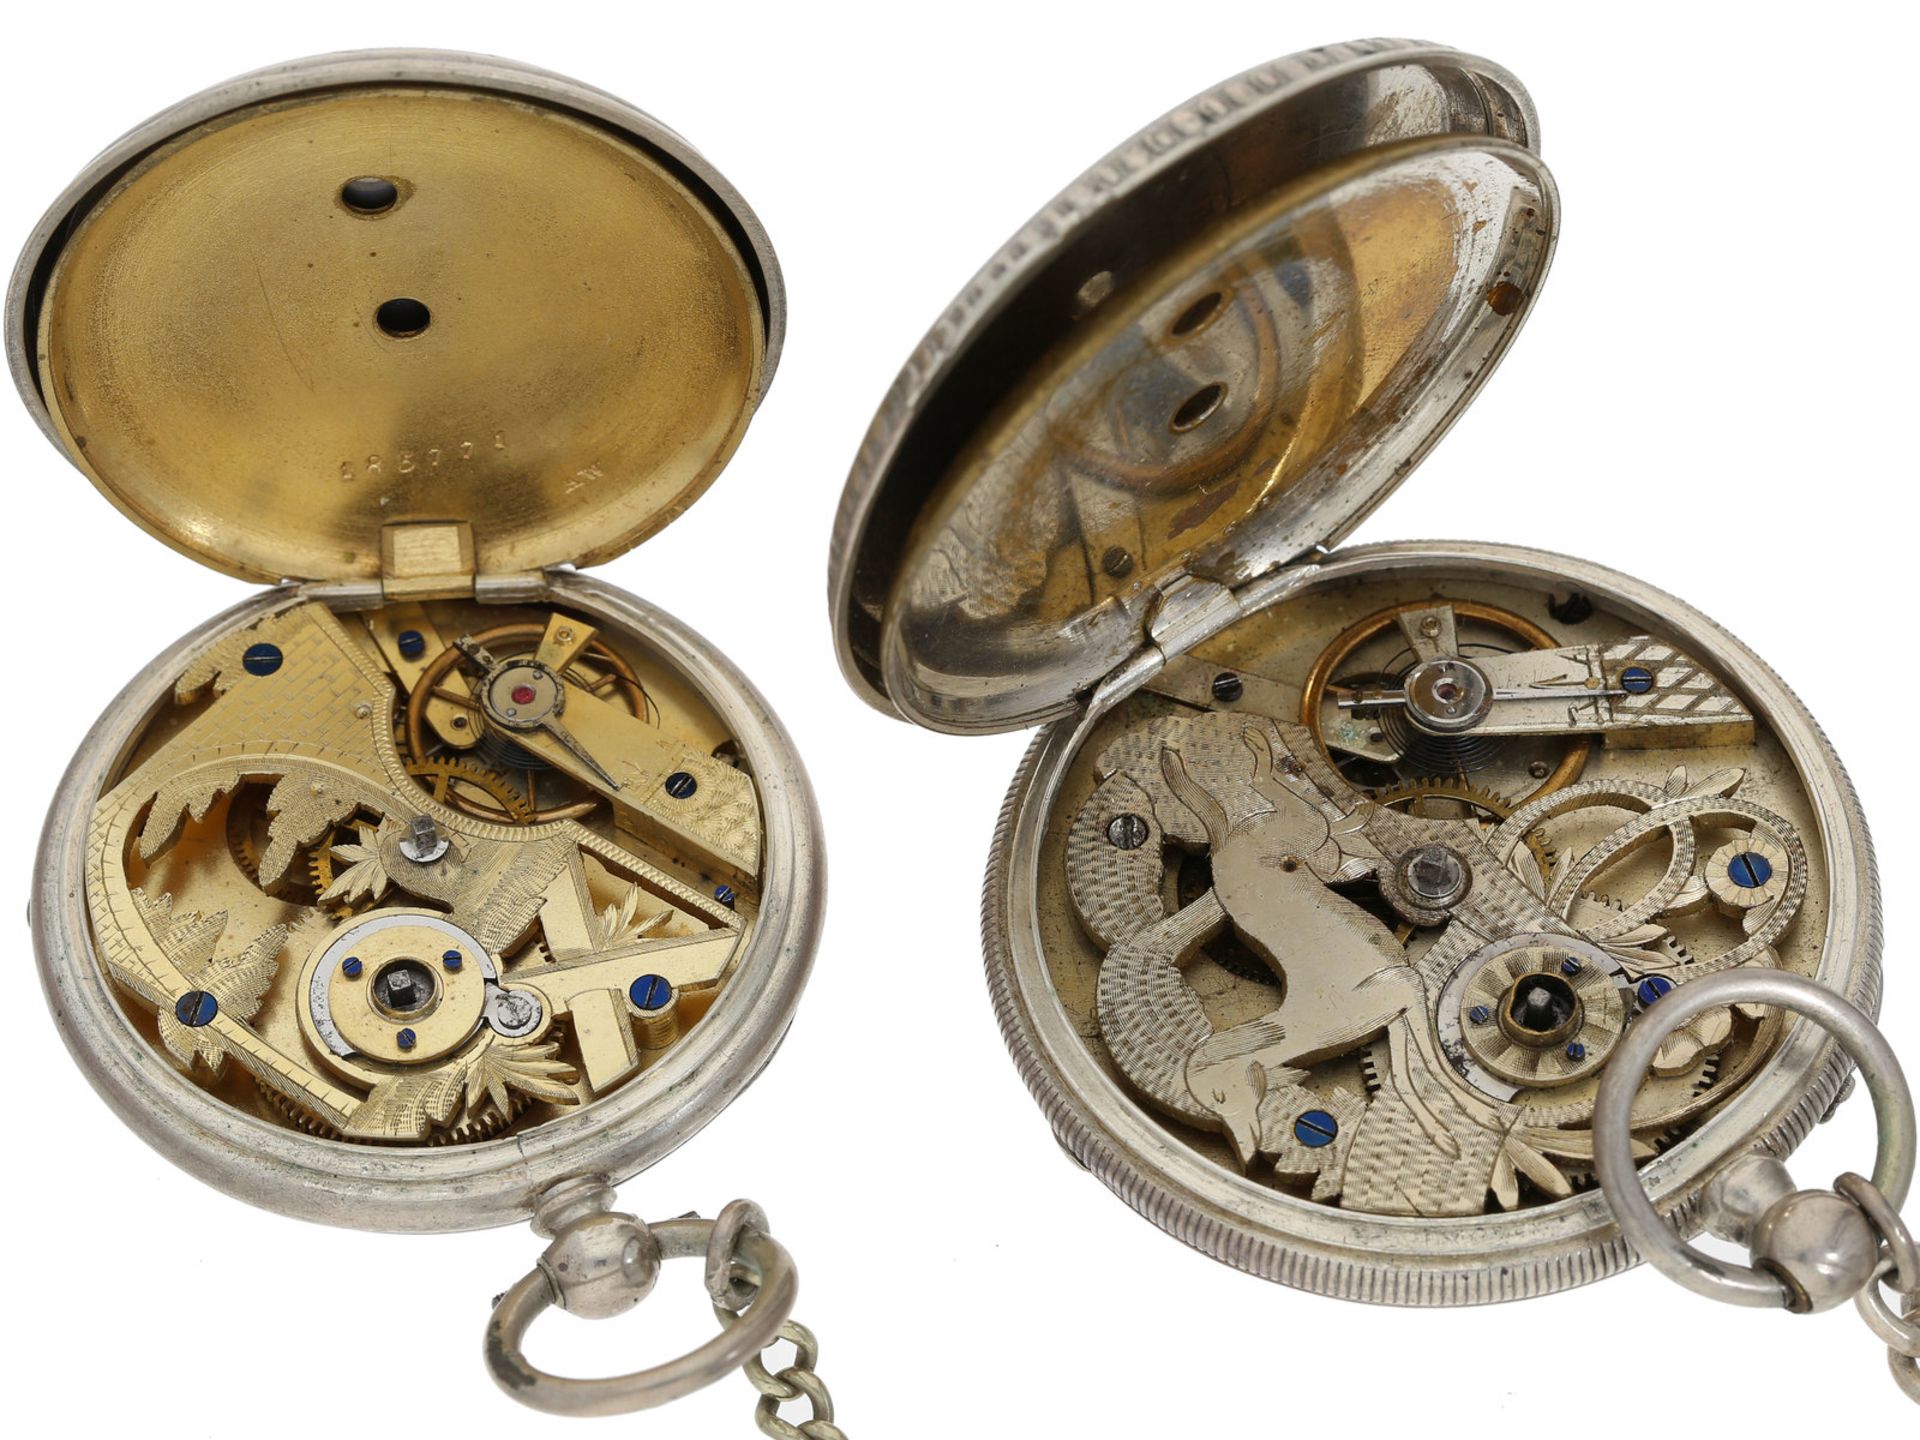 Taschenuhr: Konvolut von 2 silbernen Taschenuhren, vermutlich Schweiz um 1880Ca. Ø50m - Bild 2 aus 2